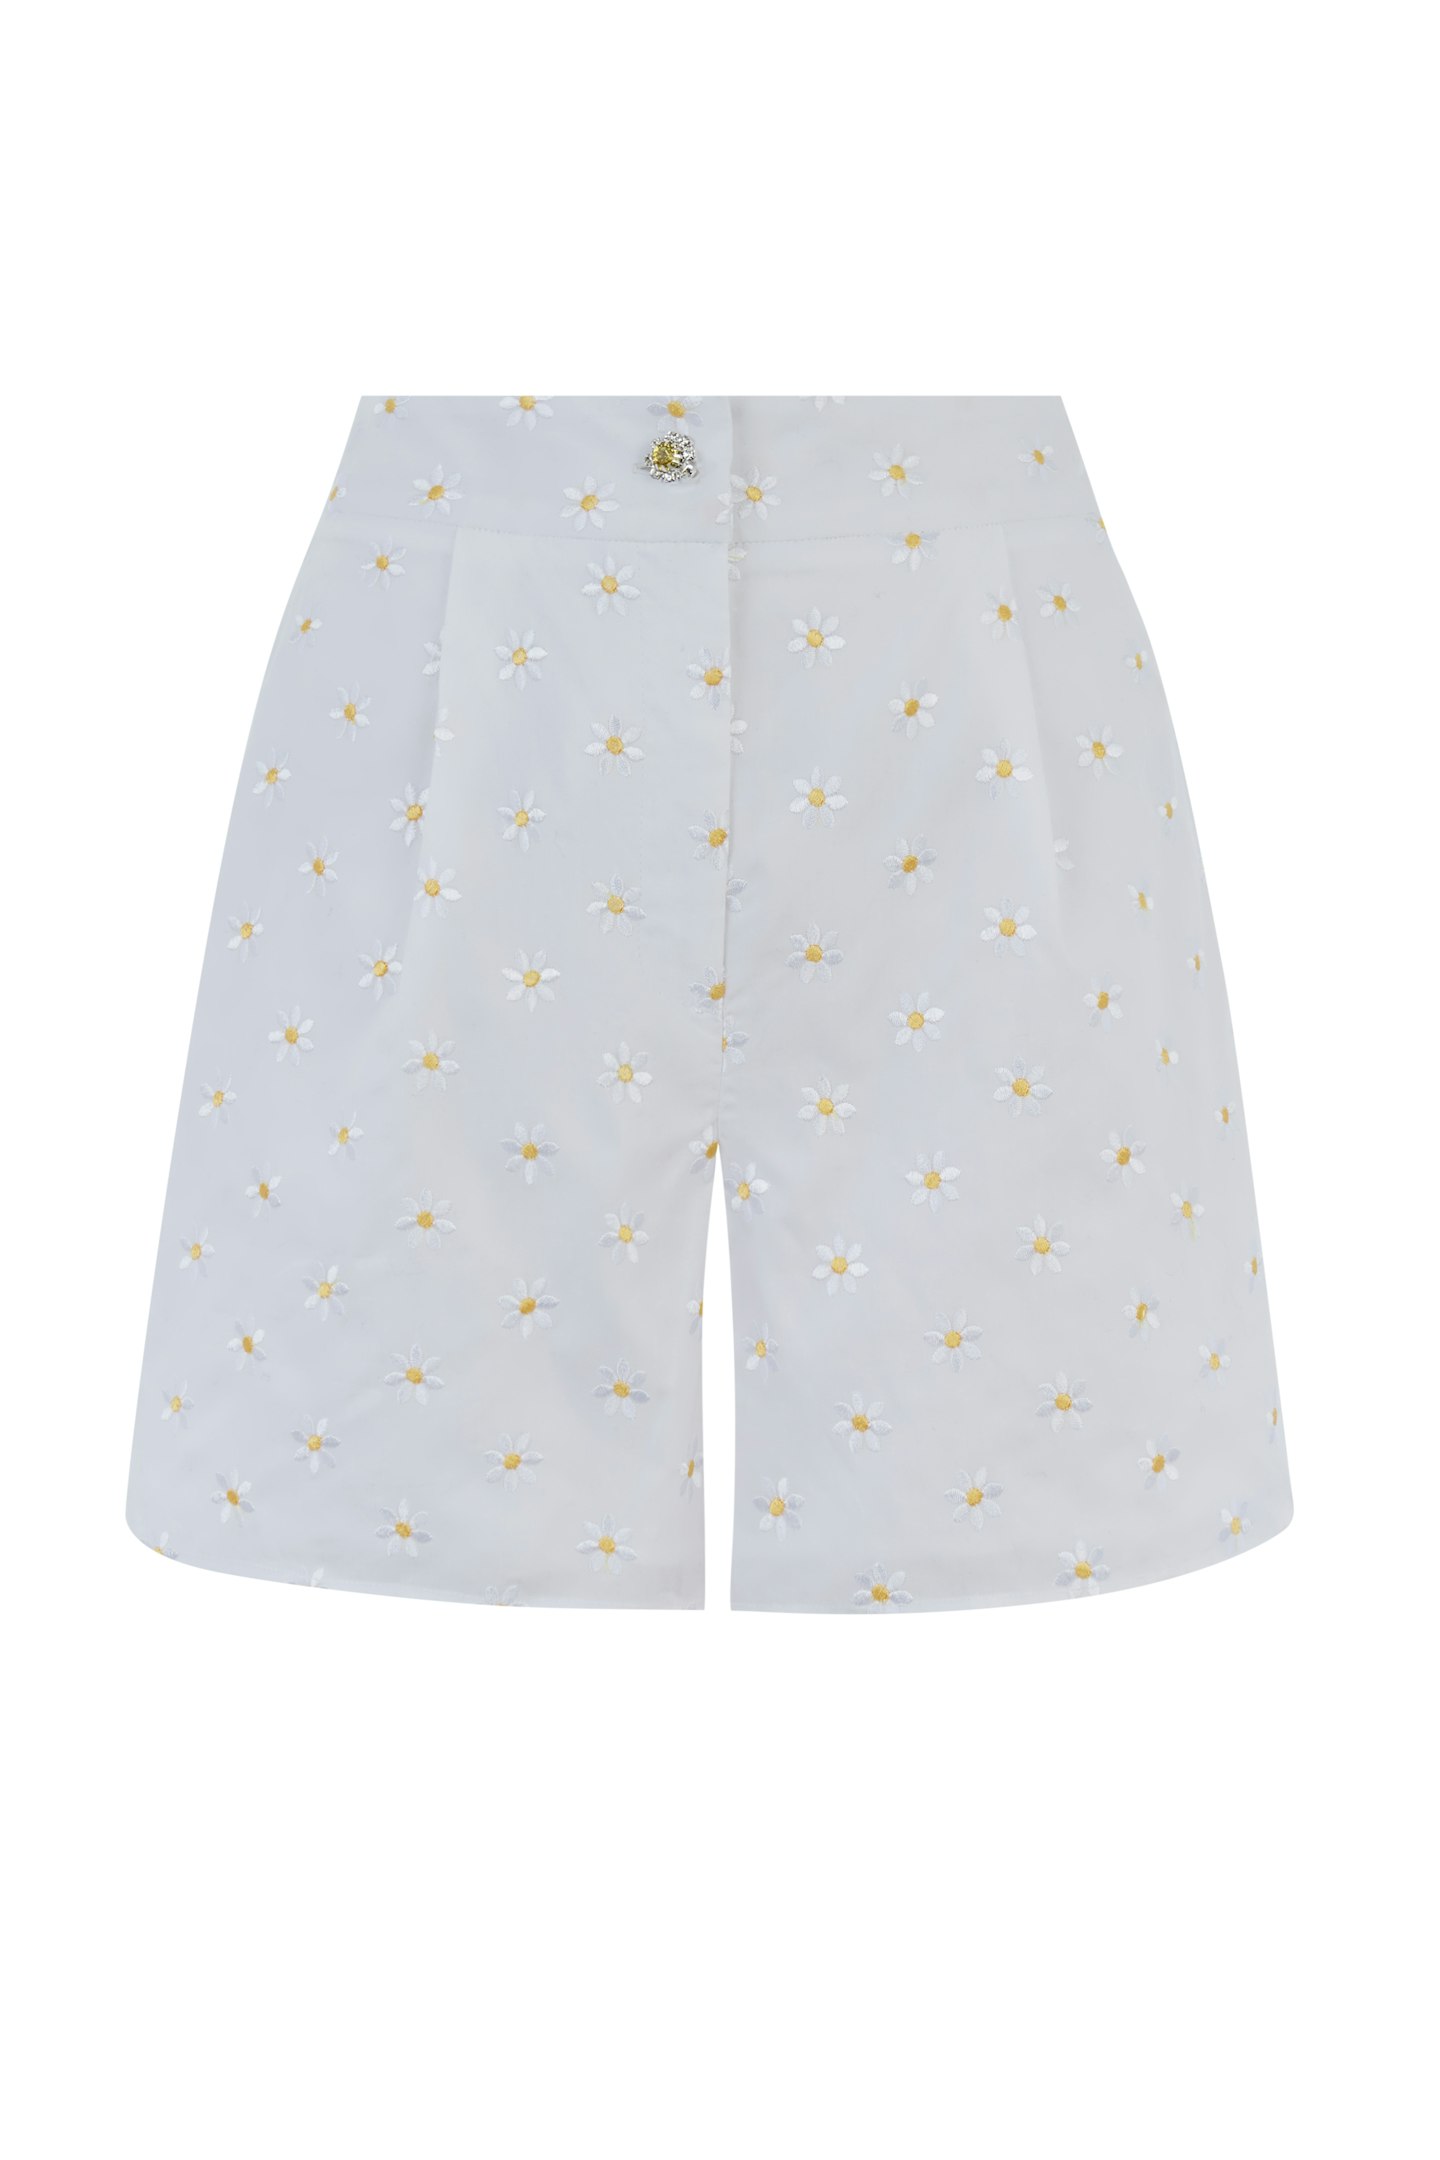 Shrimps x Warehouse daisy shorts